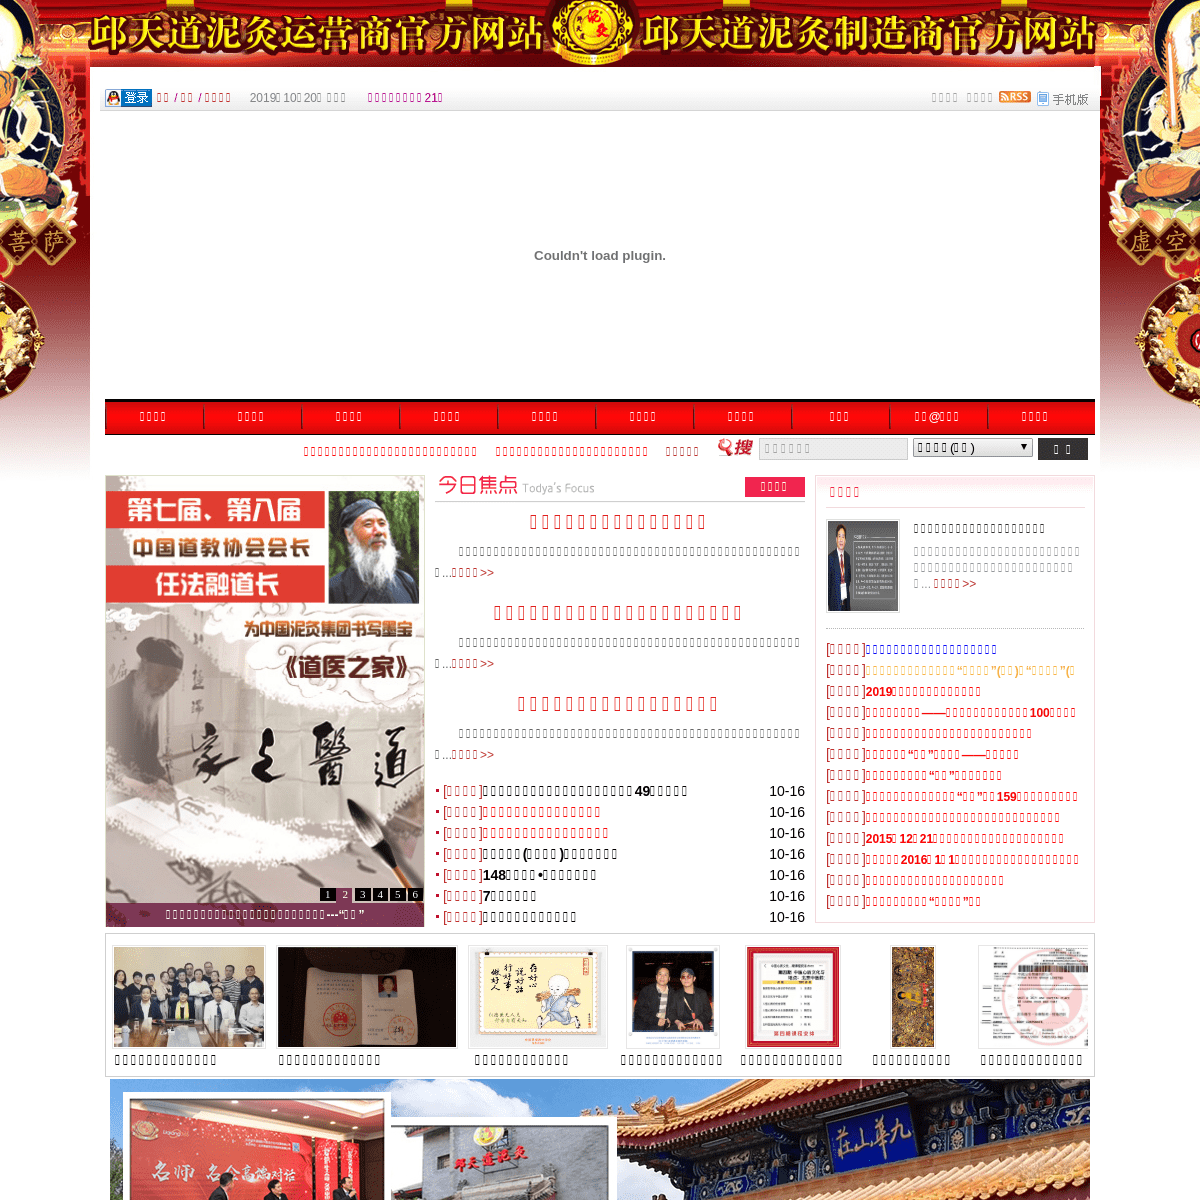 A complete backup of zhongguonijiu.com